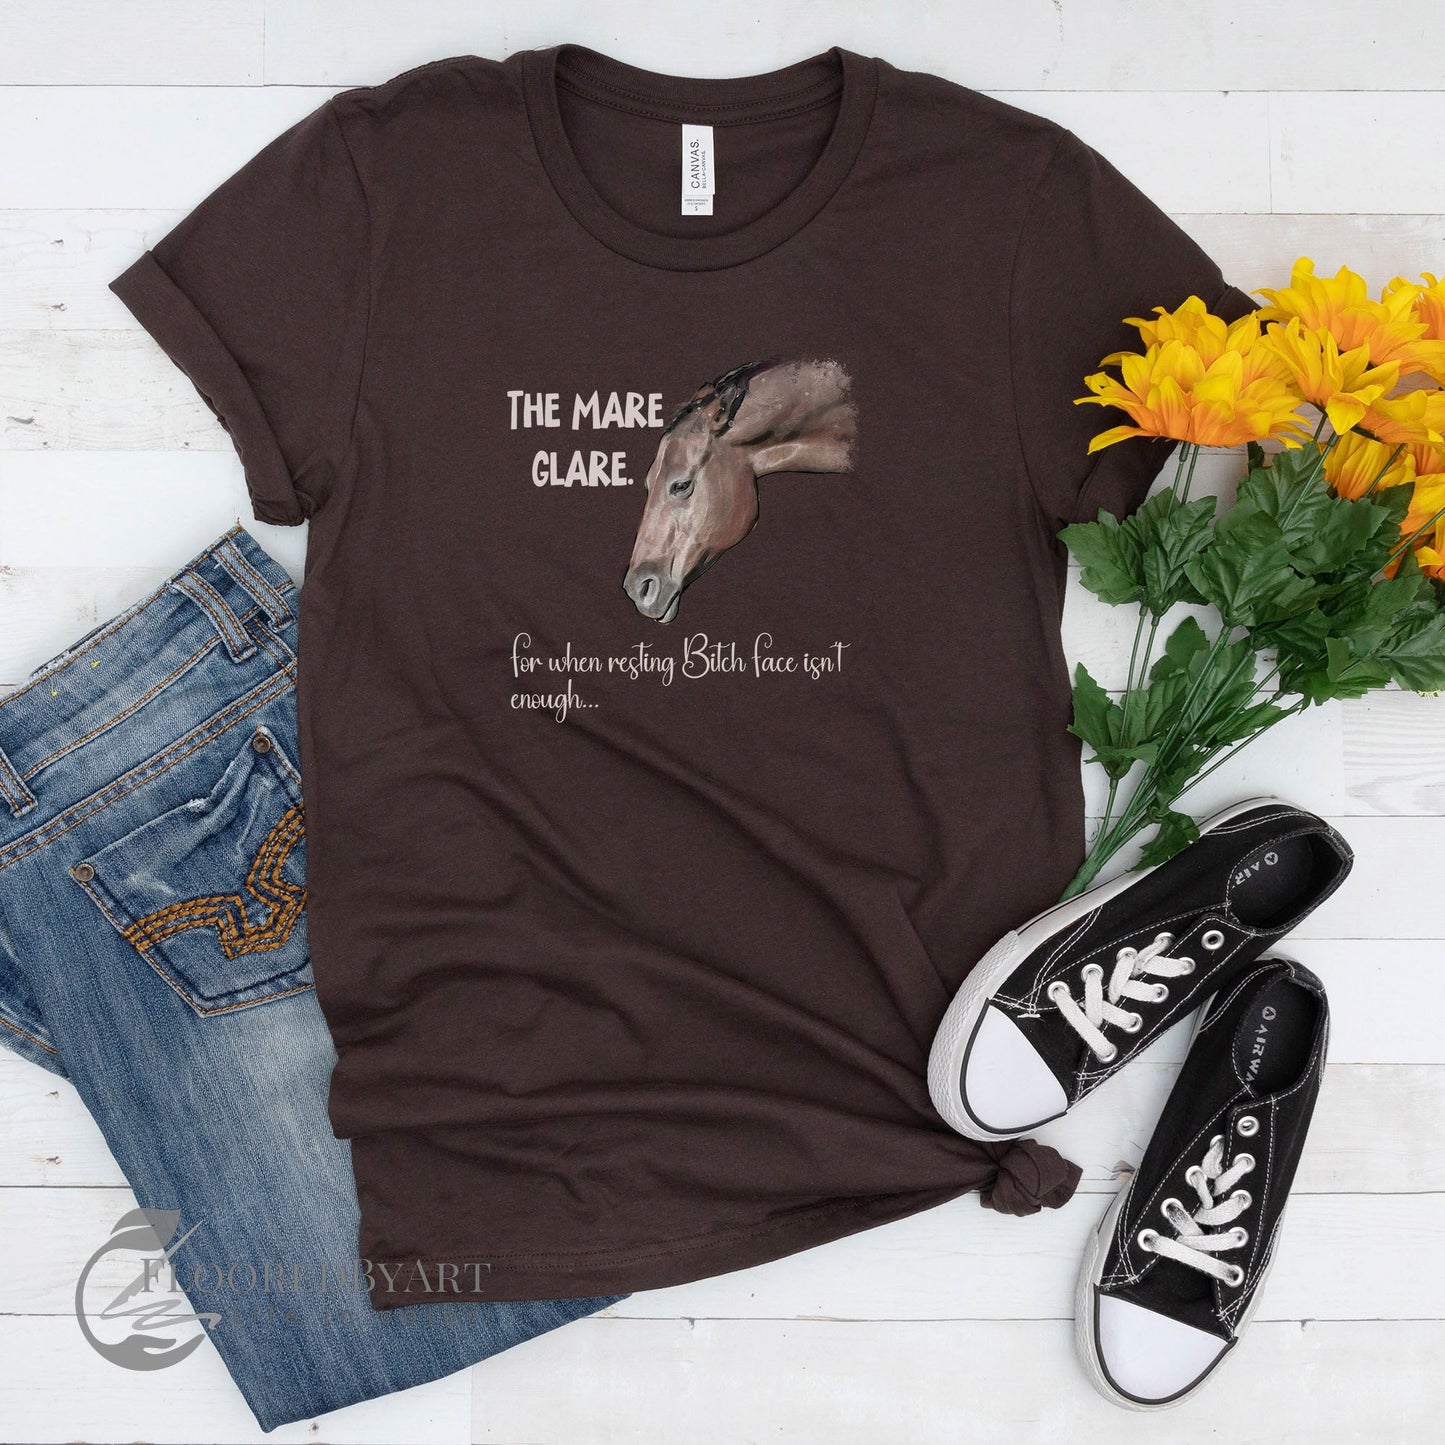 Mare Horse T-shirt: Funny, Feisty Mare Joke T-shirt for Horse Lover - FlooredByArt